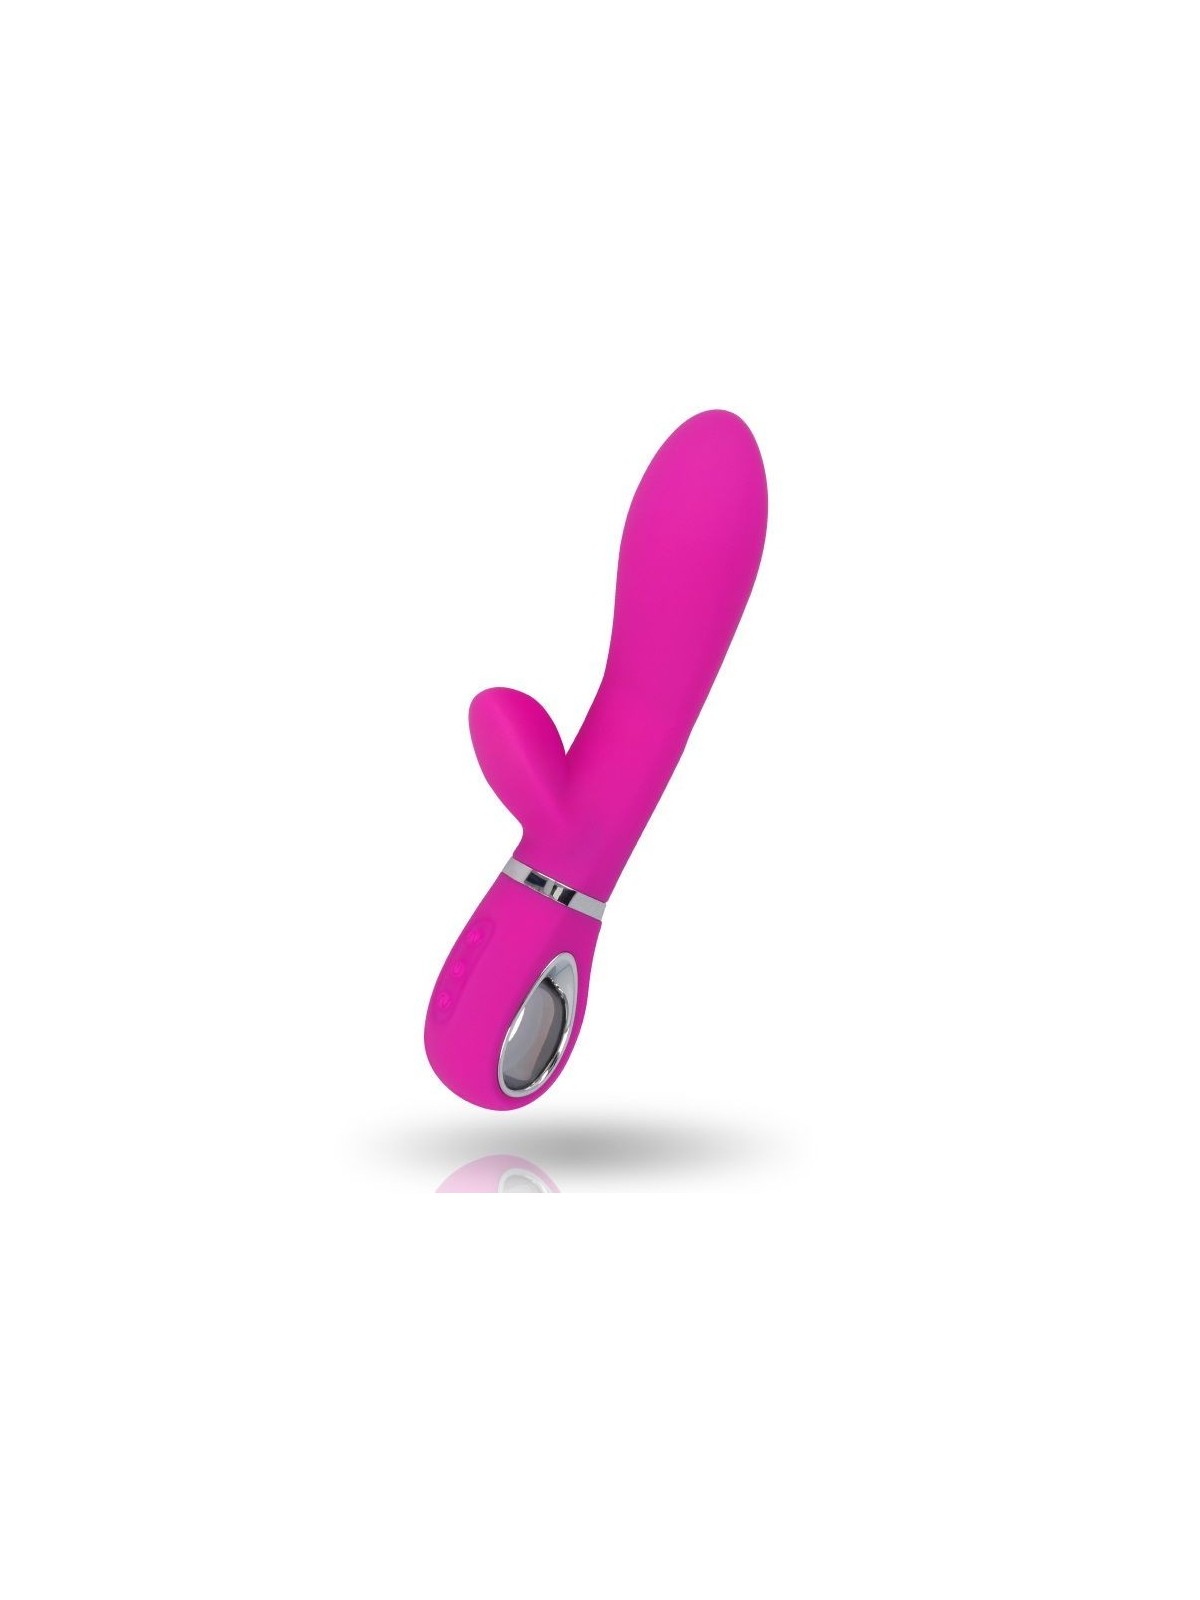 Inspire Soft Mercy Vibrador Rosa - Comprar Conejito vibrador Inspire - Conejito rampante (1)